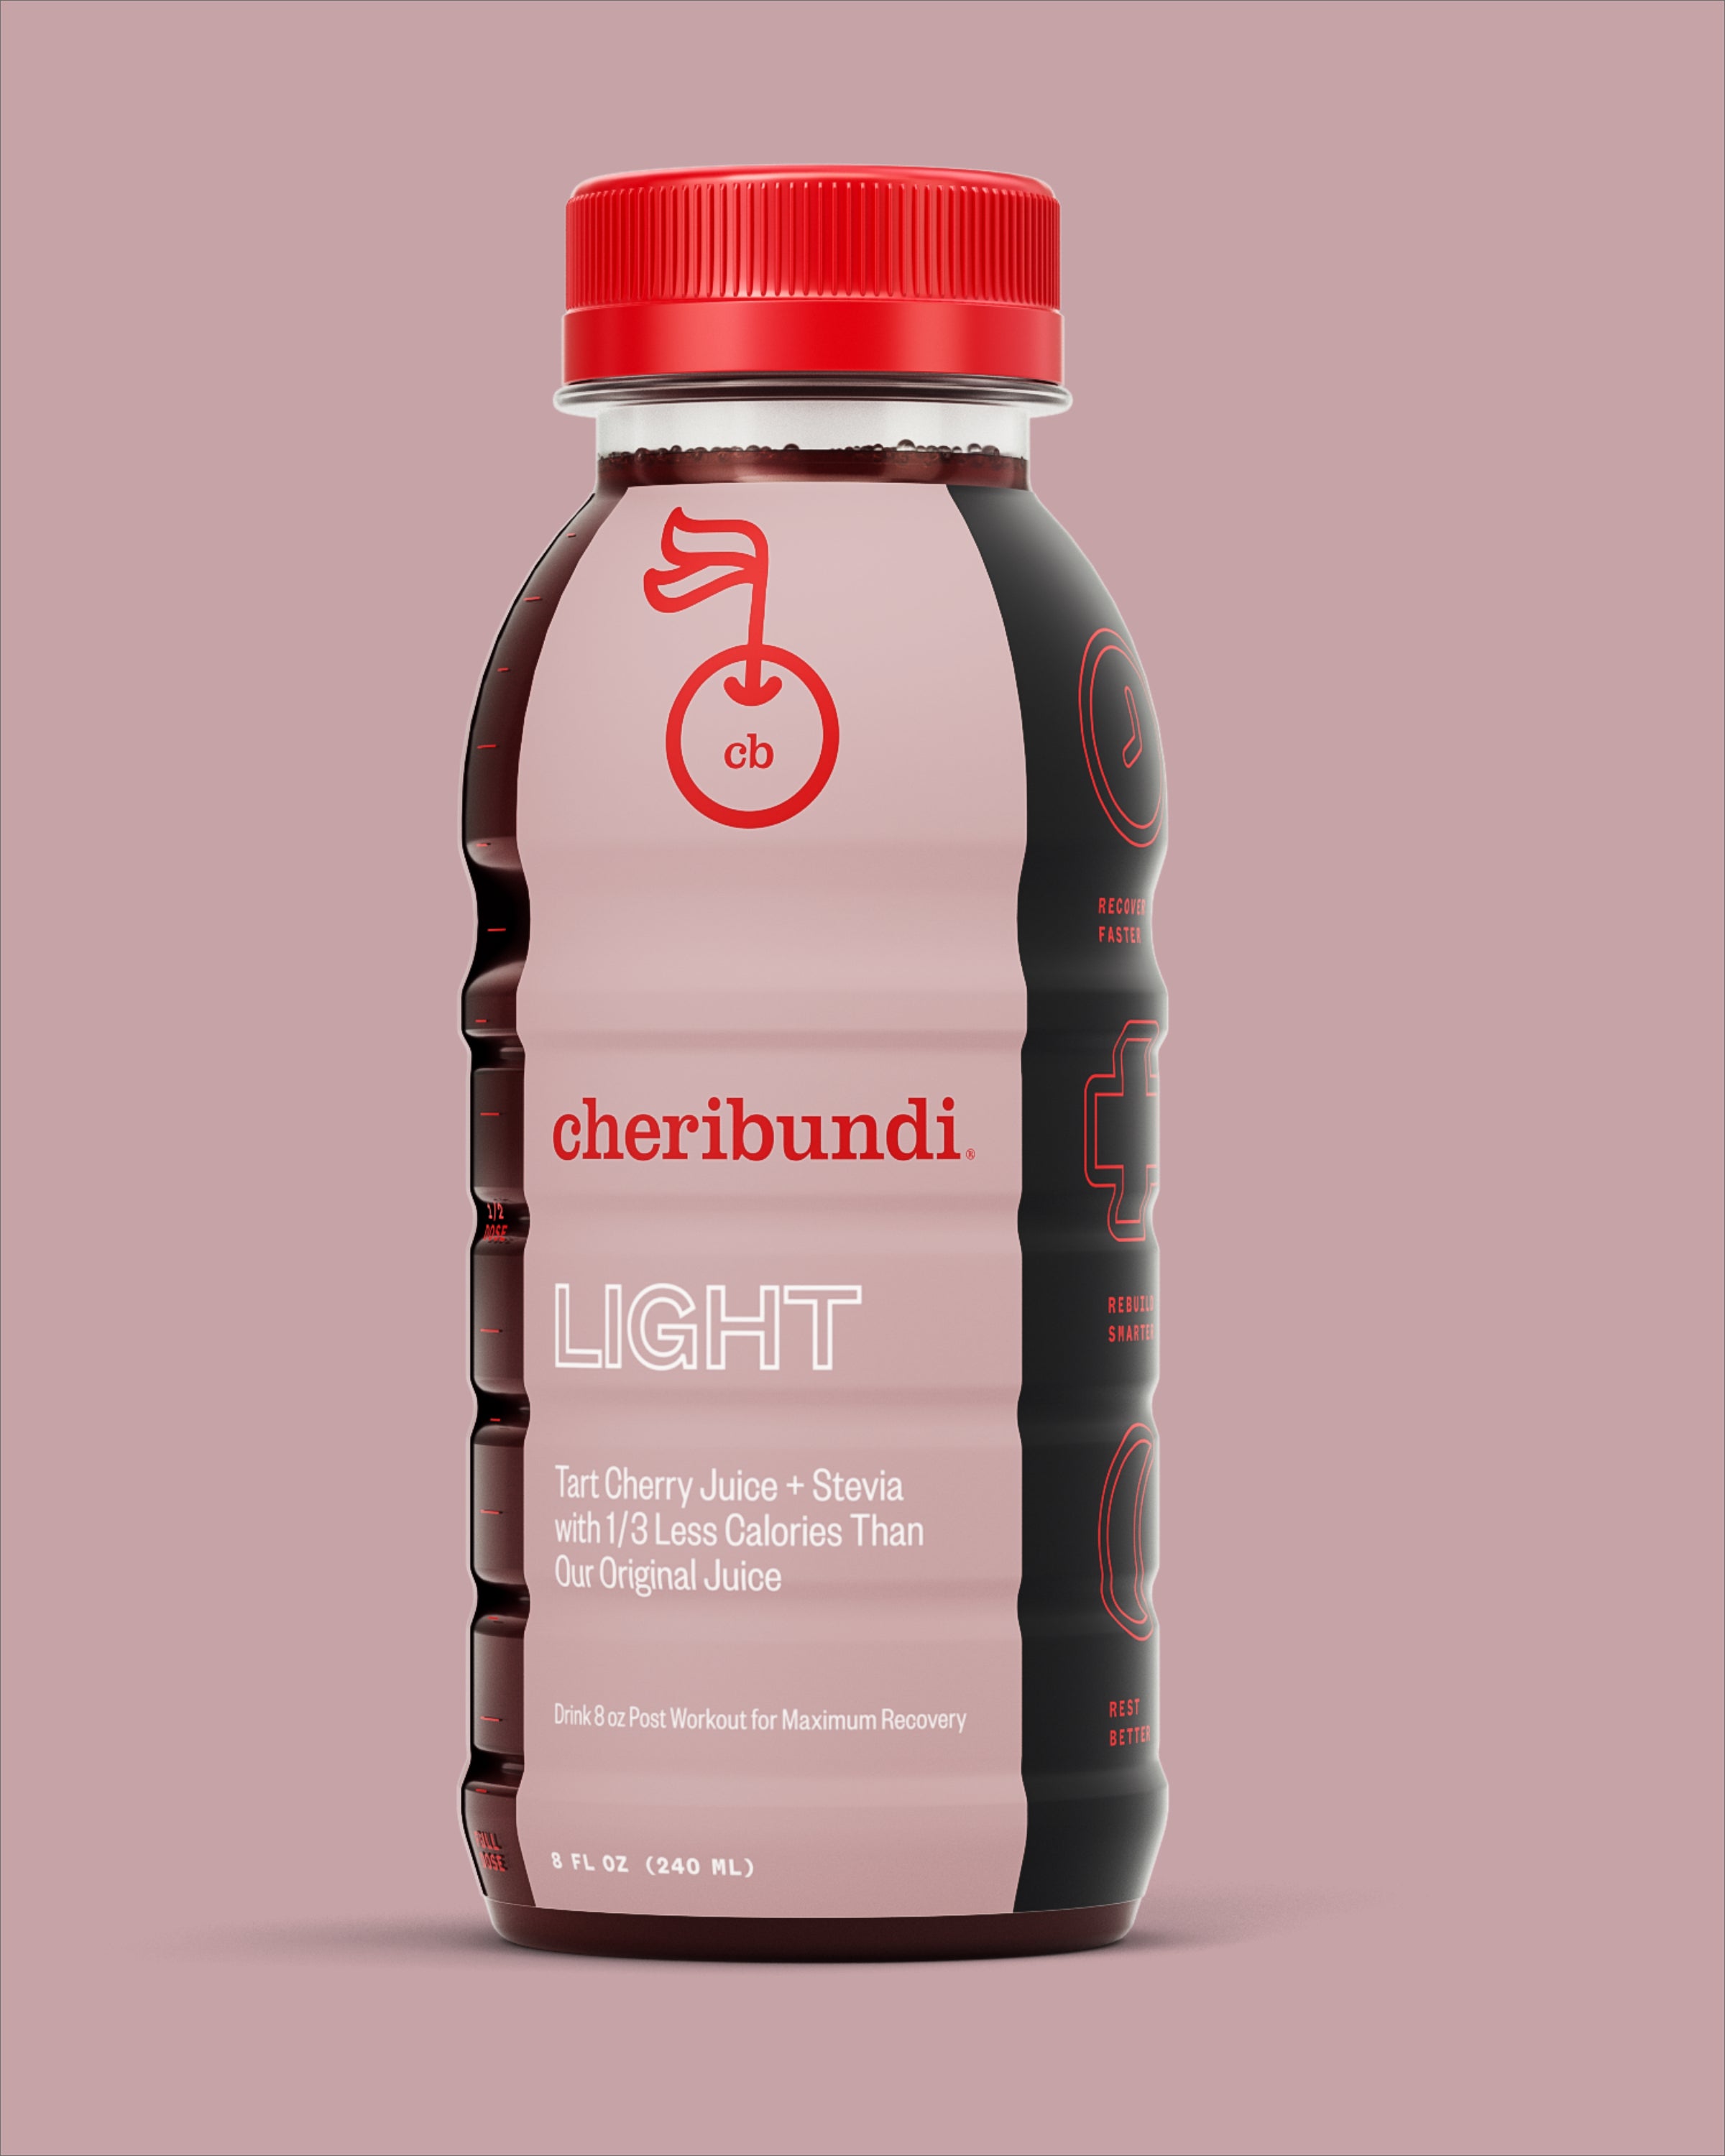 Light front packaging. Cheribundi tart cherry juice light. Cheribundi light tart cherry juice